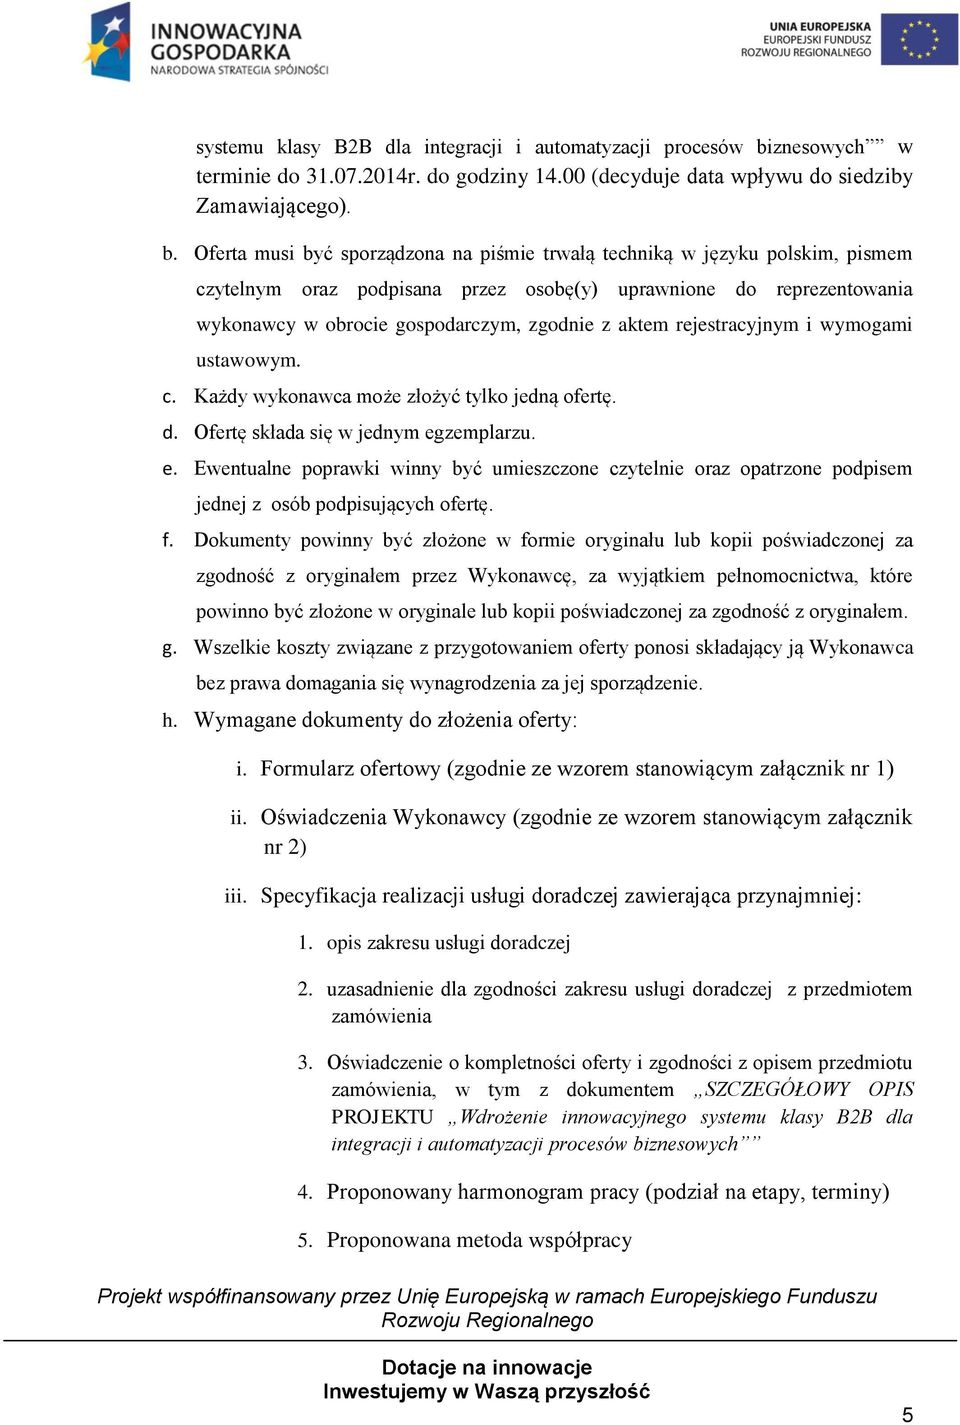 Oferta musi być sporządzona na piśmie trwałą techniką w języku polskim, pismem czytelnym oraz podpisana przez osobę(y) uprawnione do reprezentowania wykonawcy w obrocie gospodarczym, zgodnie z aktem